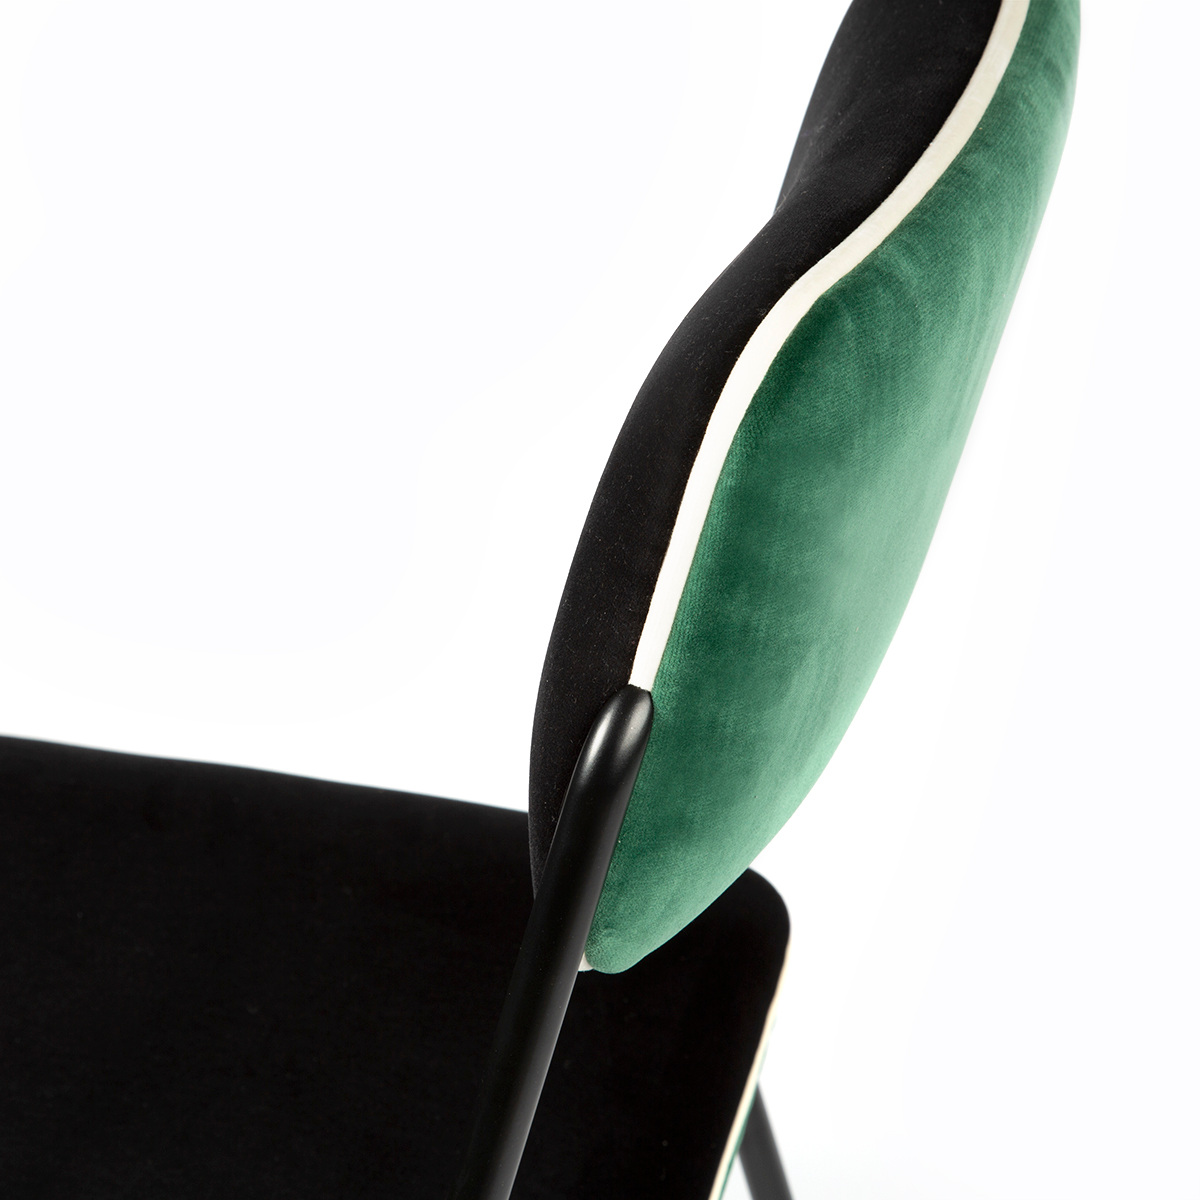 Chaise Double Jeu, Vert - H85 x l45 x P43 cm - Acier / Velours - image 5